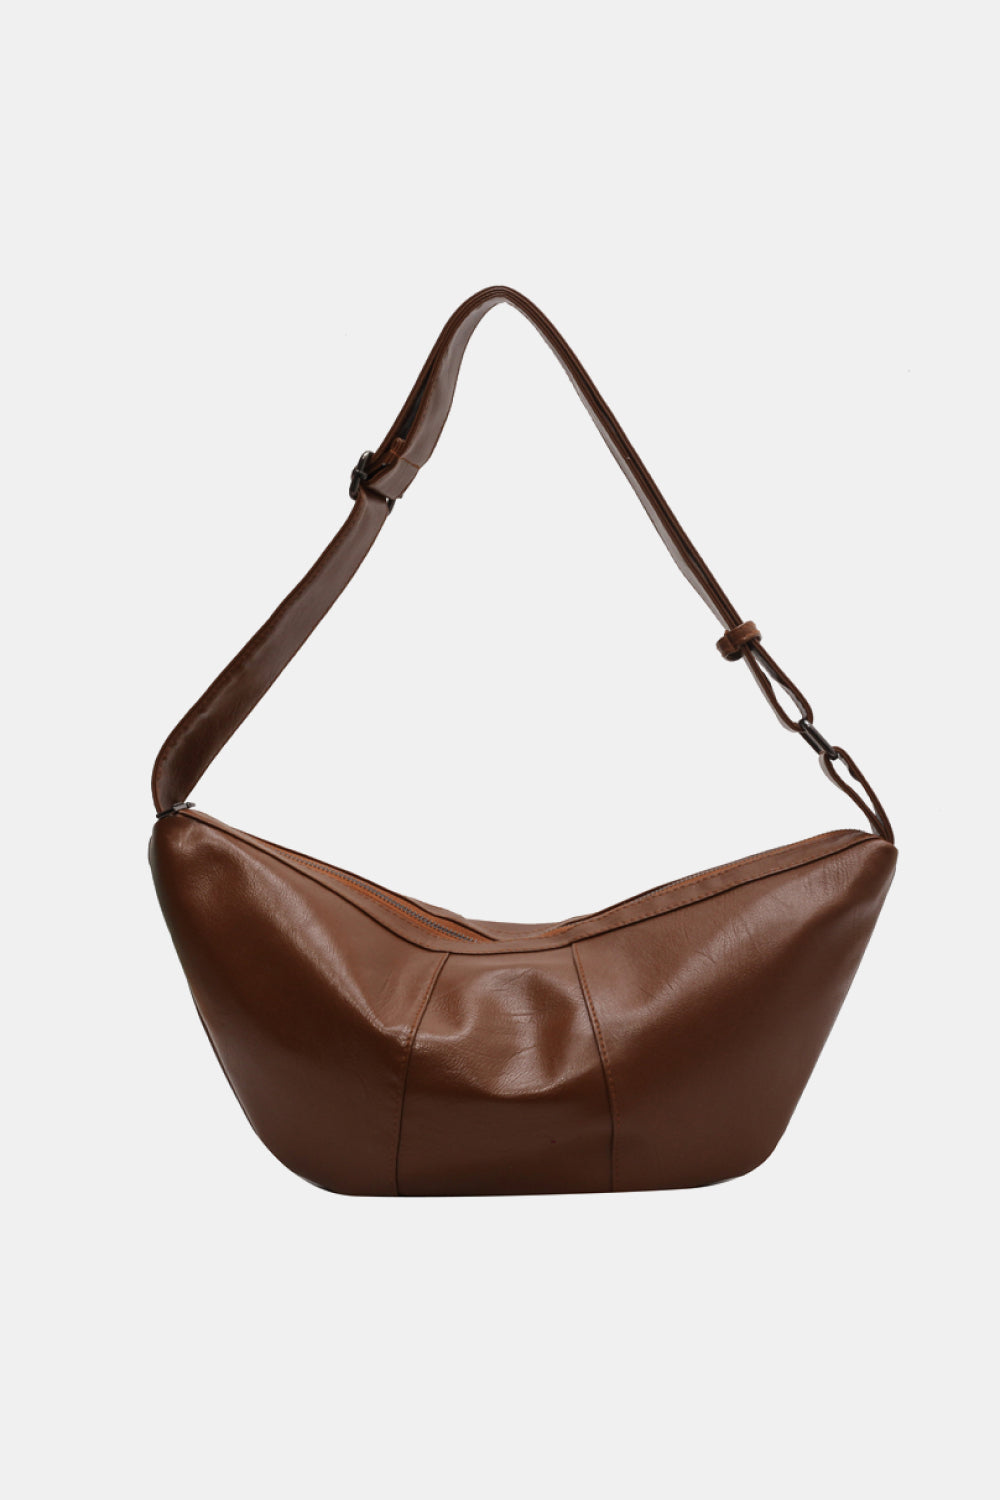 SurePassionate PU Leather Sling Bag